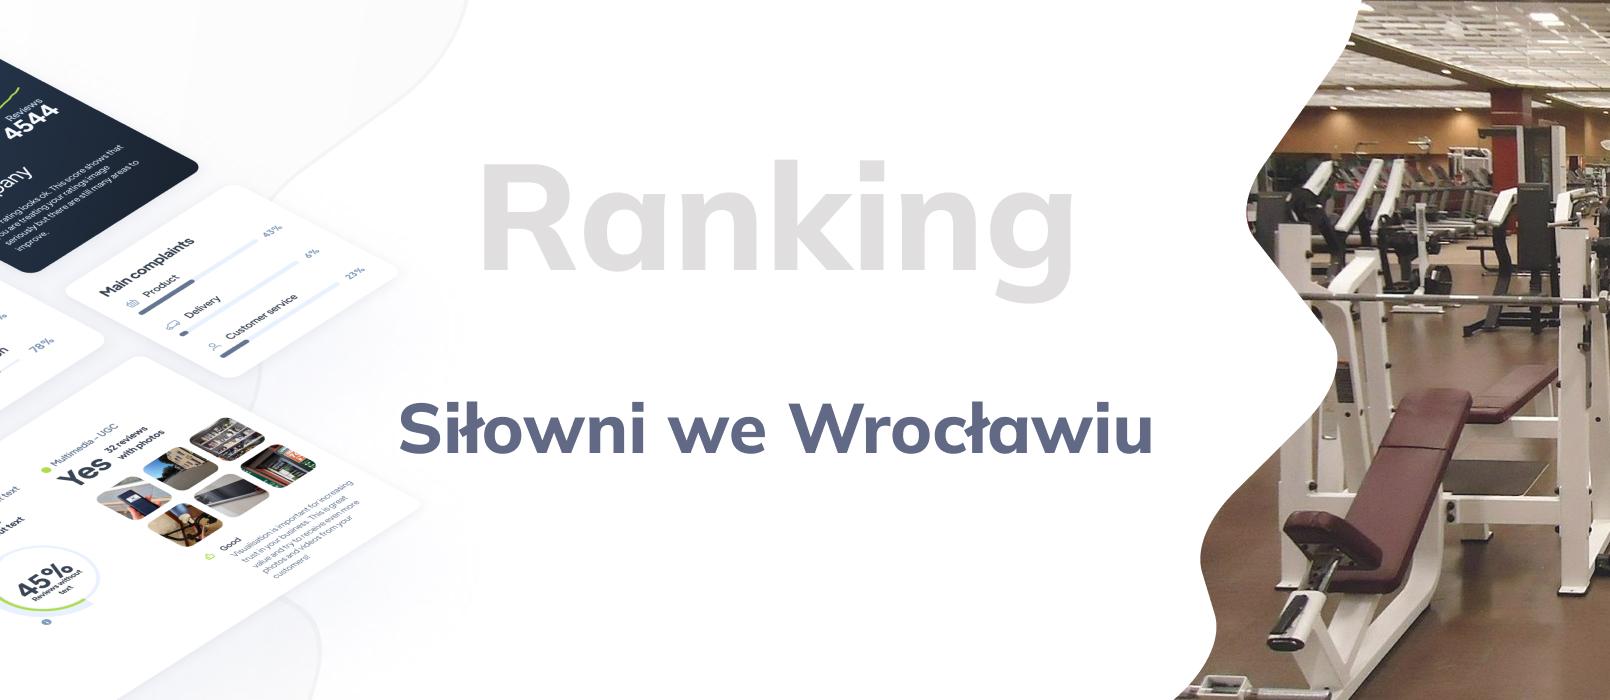 Siłownie we Wrocławiu - ranking TOP 10